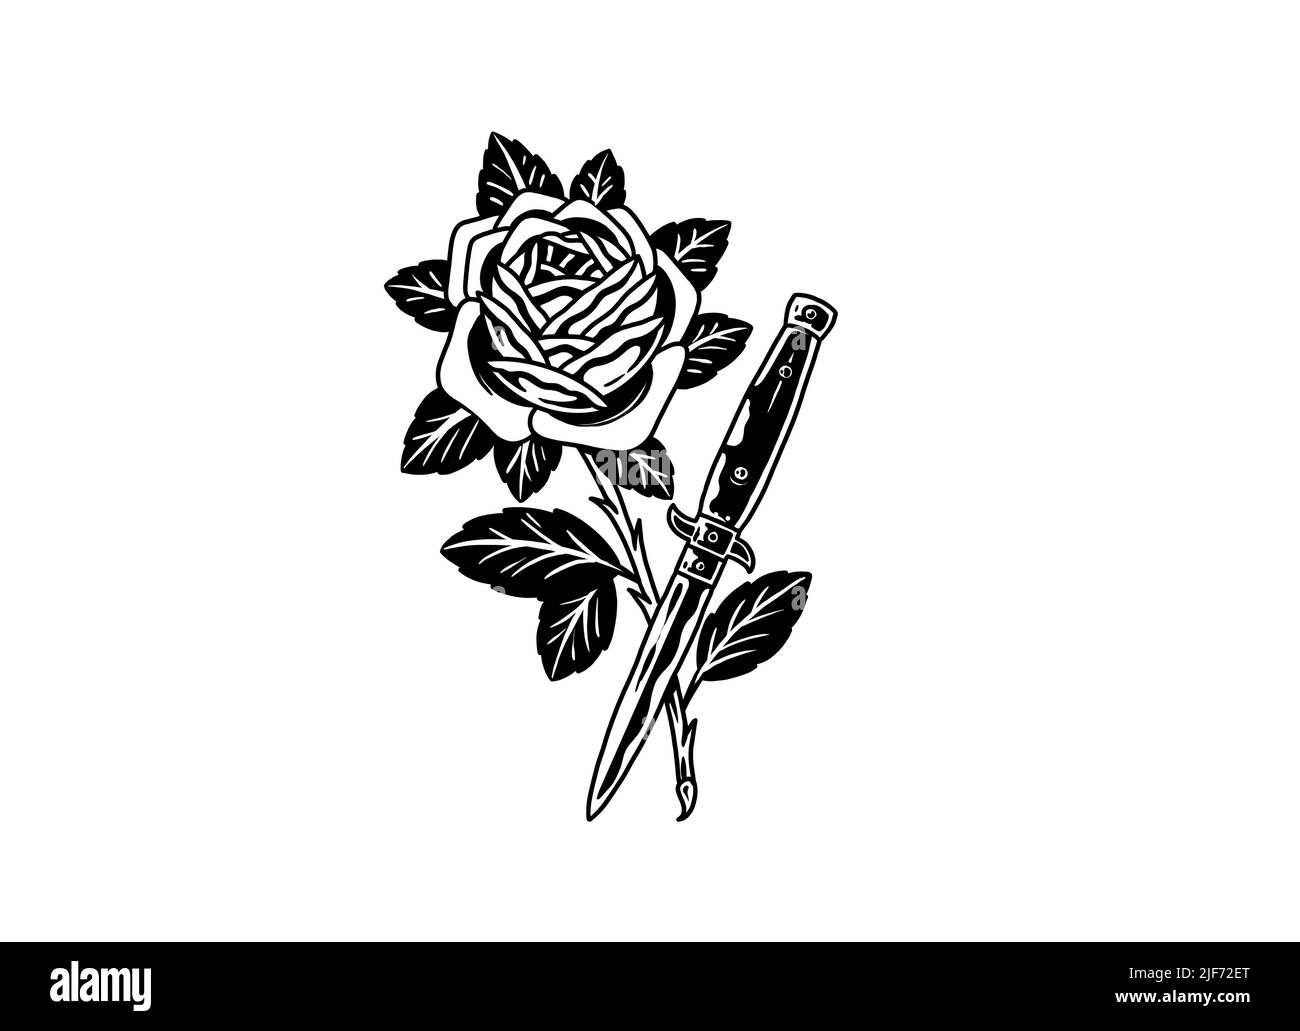 Old School tatouage style conception graphique dessin rose et couteau d'épée Banque D'Images